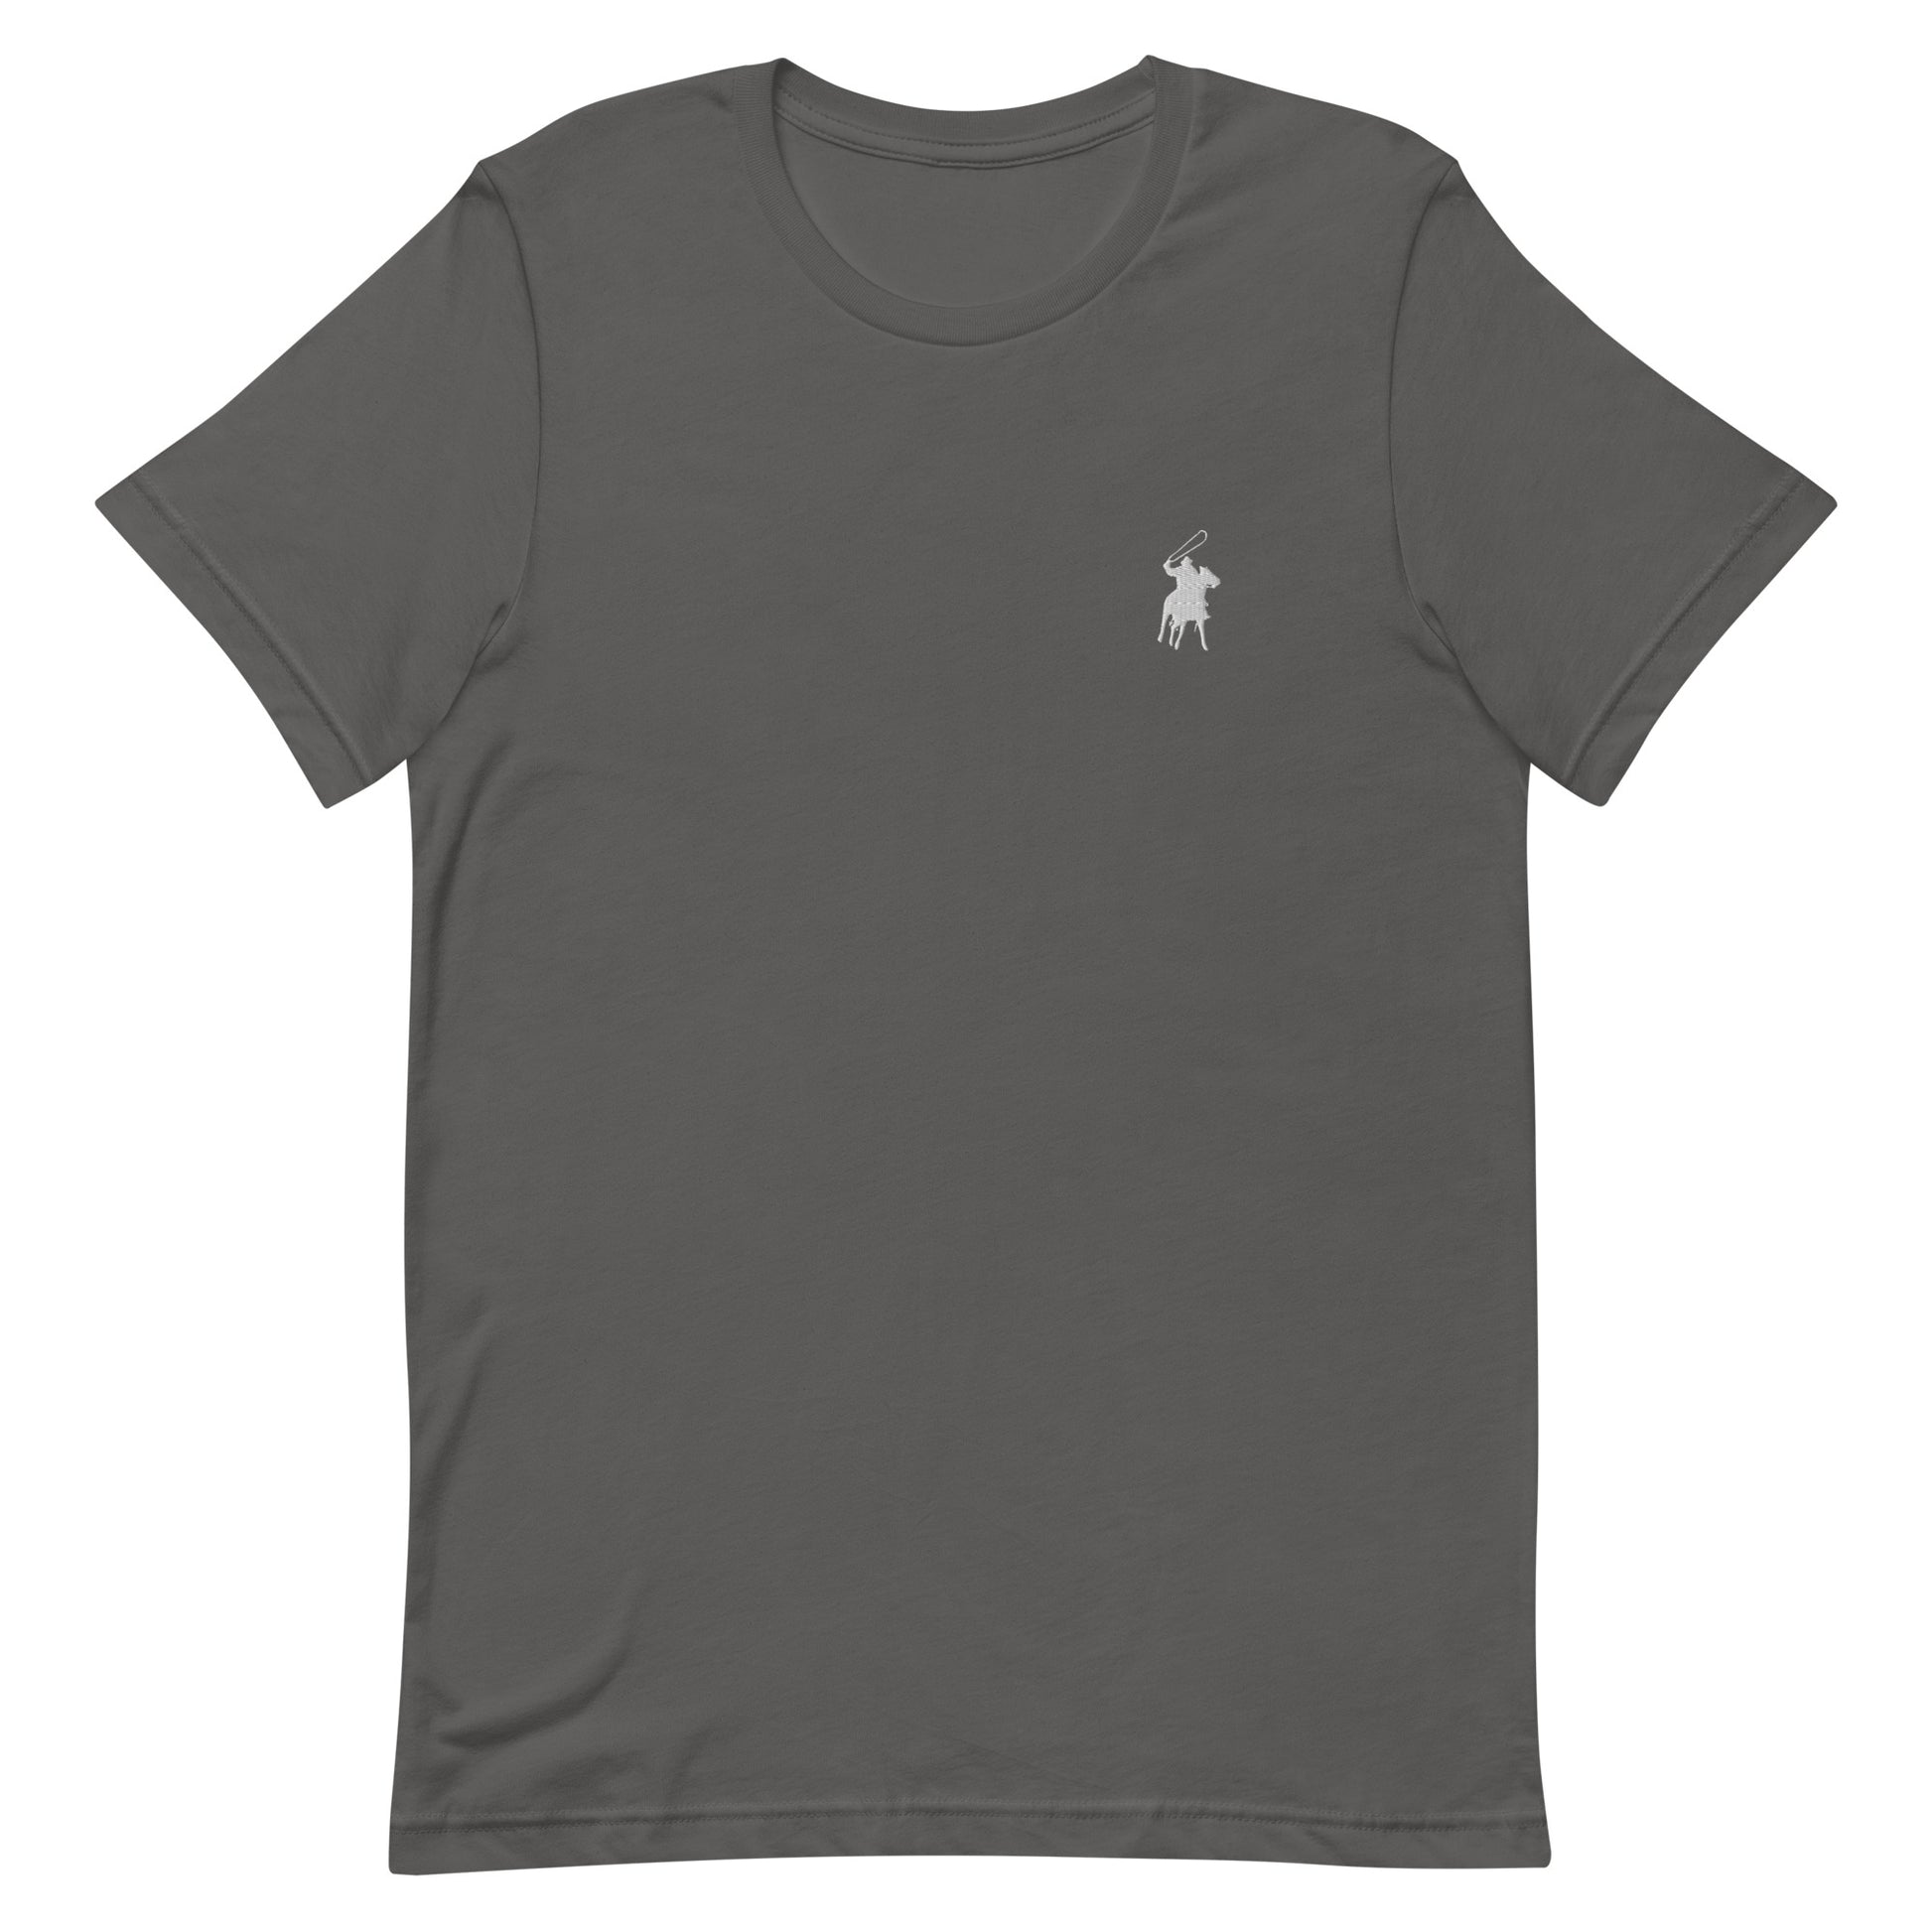 Country Polo Tee (Grey logo on Asphalt T-shirt)